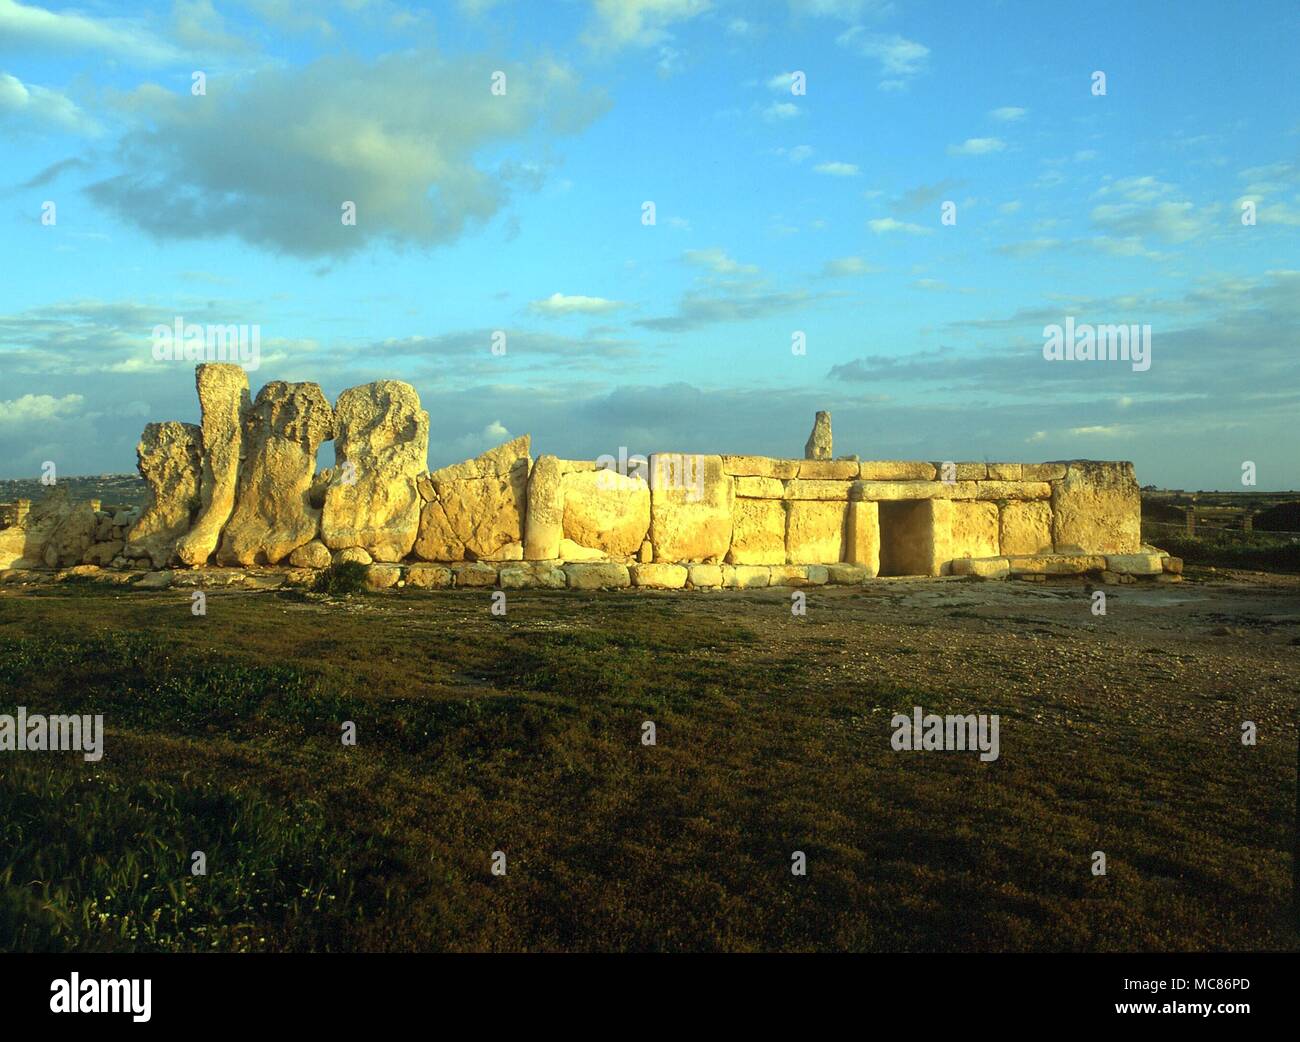 MALTA - prähistorische Funde - Hagar Qim die Ruinen des sogenannten "Tempel" von Hagar Qim, Malta - Teil einer prähistorischen Komplexes mit mehr westliche Tempel von Mnajdra. Stockfoto